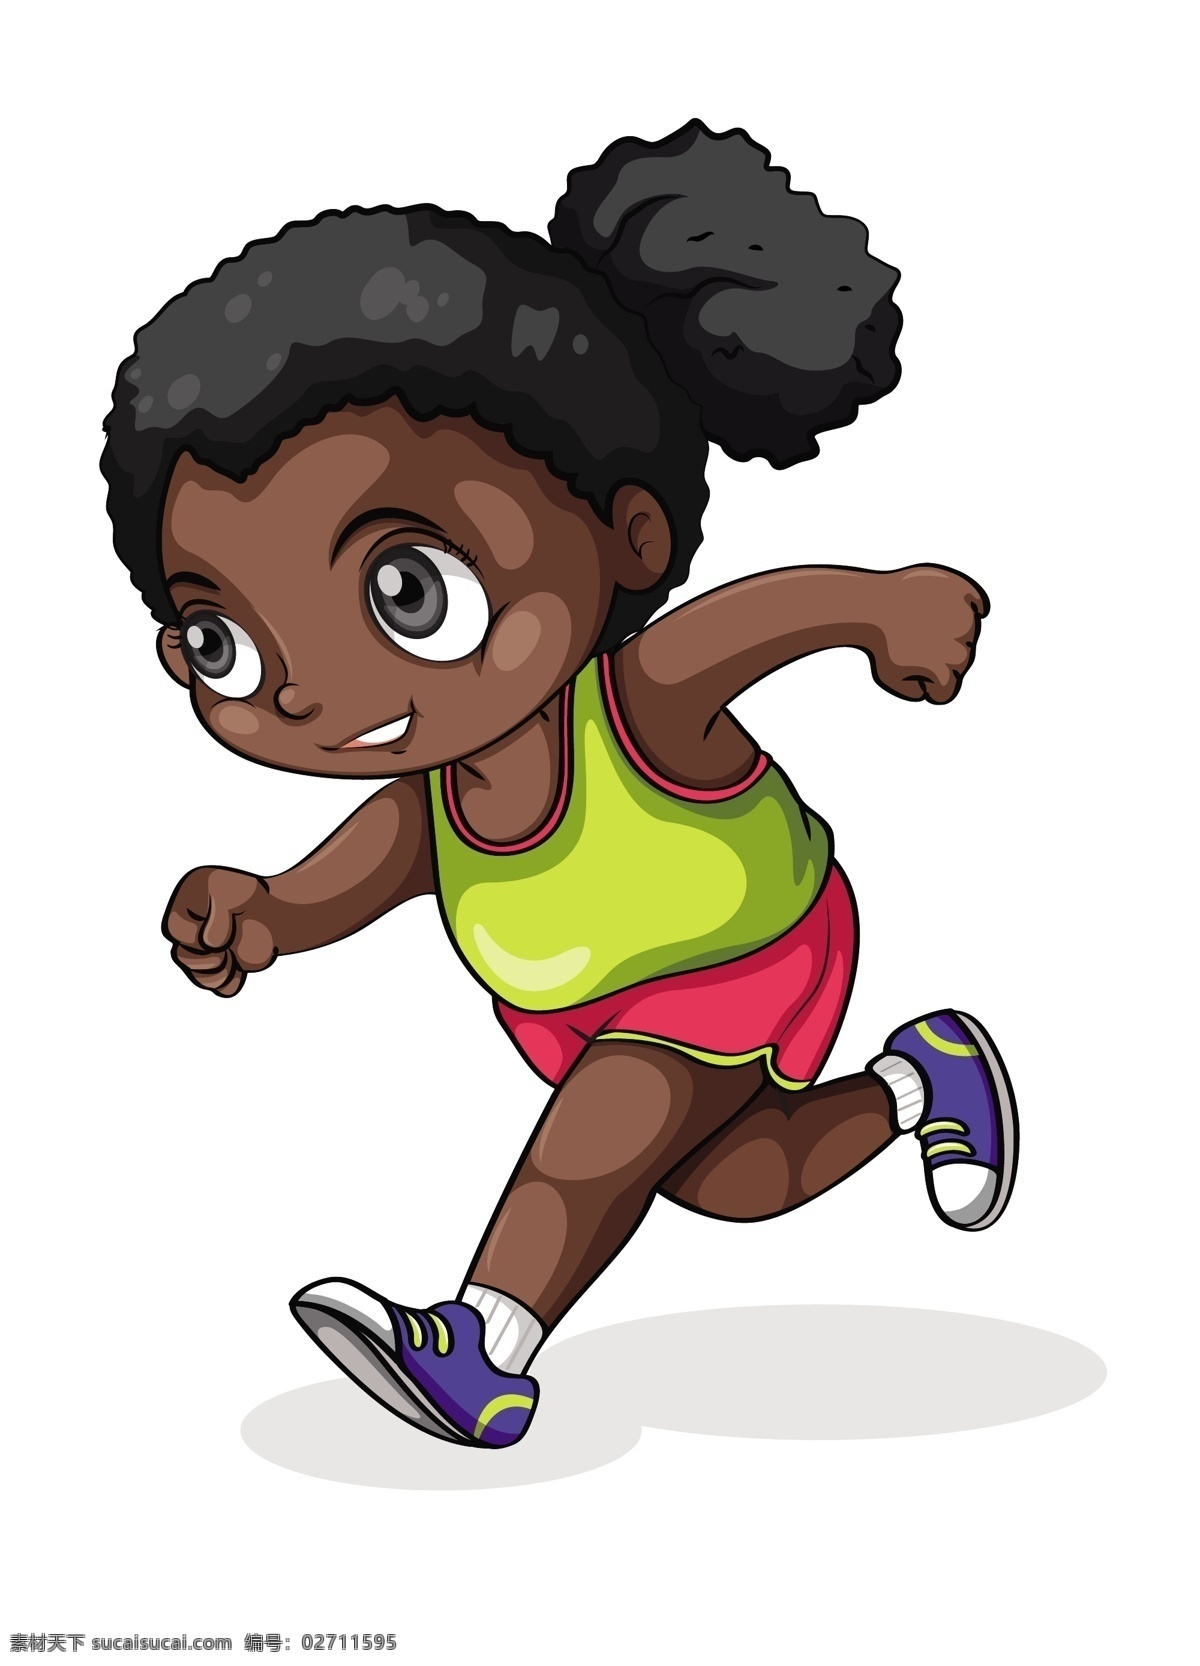 矢量 运动 跑步 可爱 的卡 通 儿童 人物 活泼孩子 快乐可爱儿童 卡通人物 漫画人物 日常生活 矢量人物 矢量素材 各种体育运动